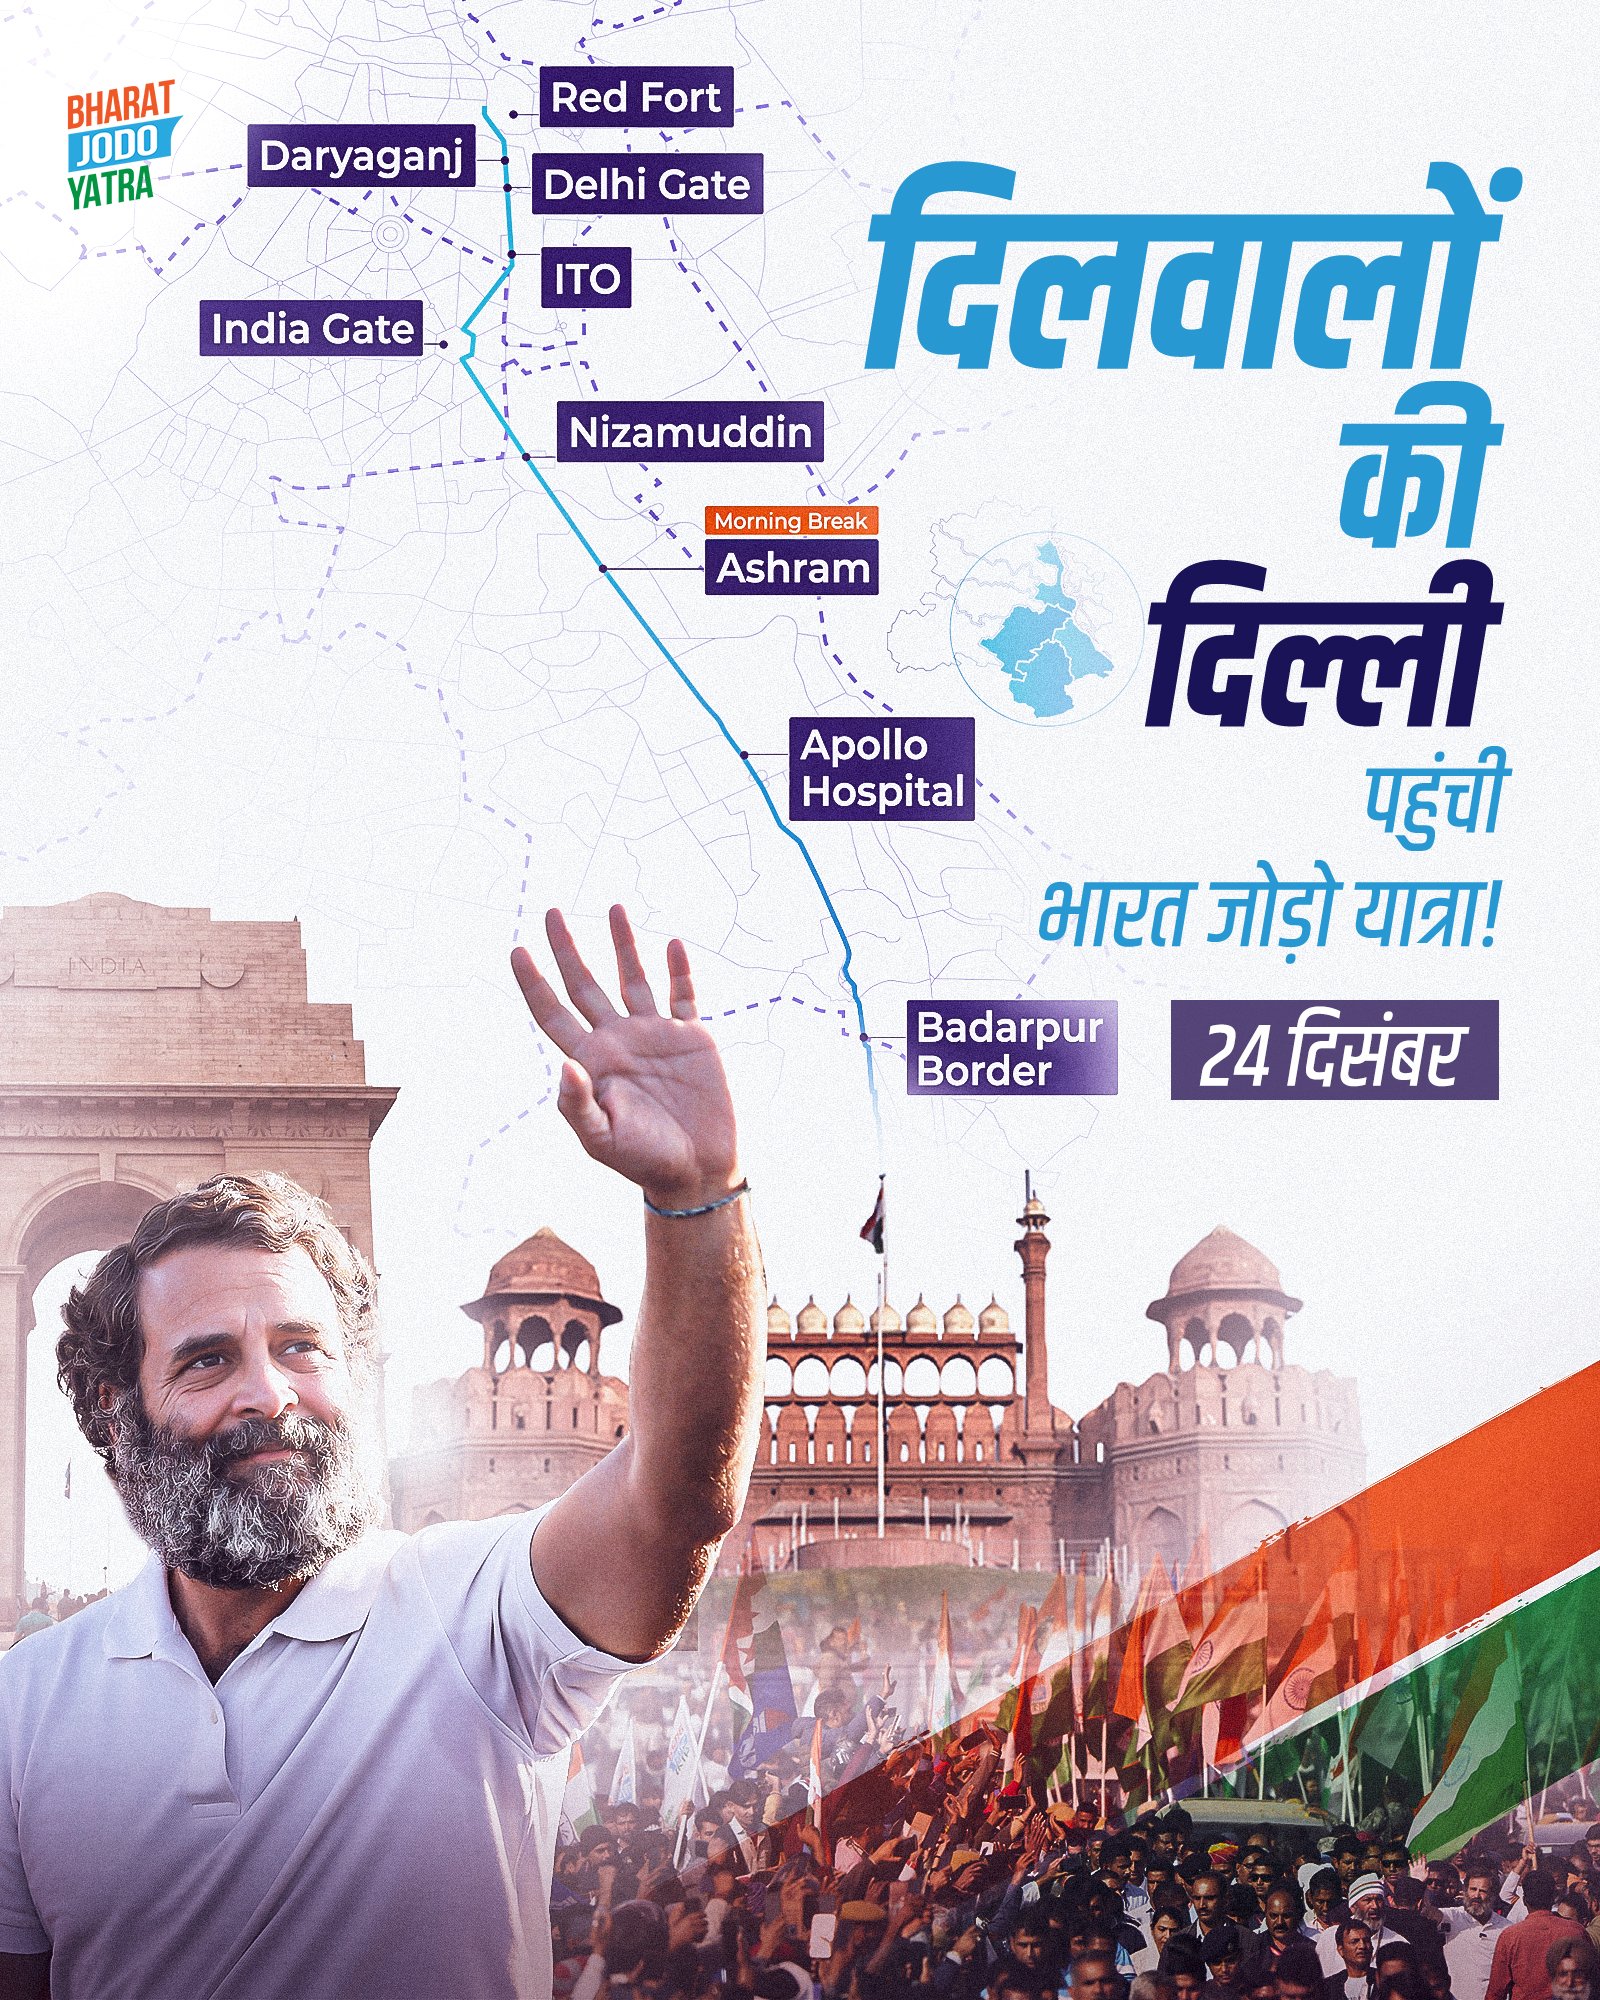 Bharat Jodo Yatra to reach Delhi tomorrow